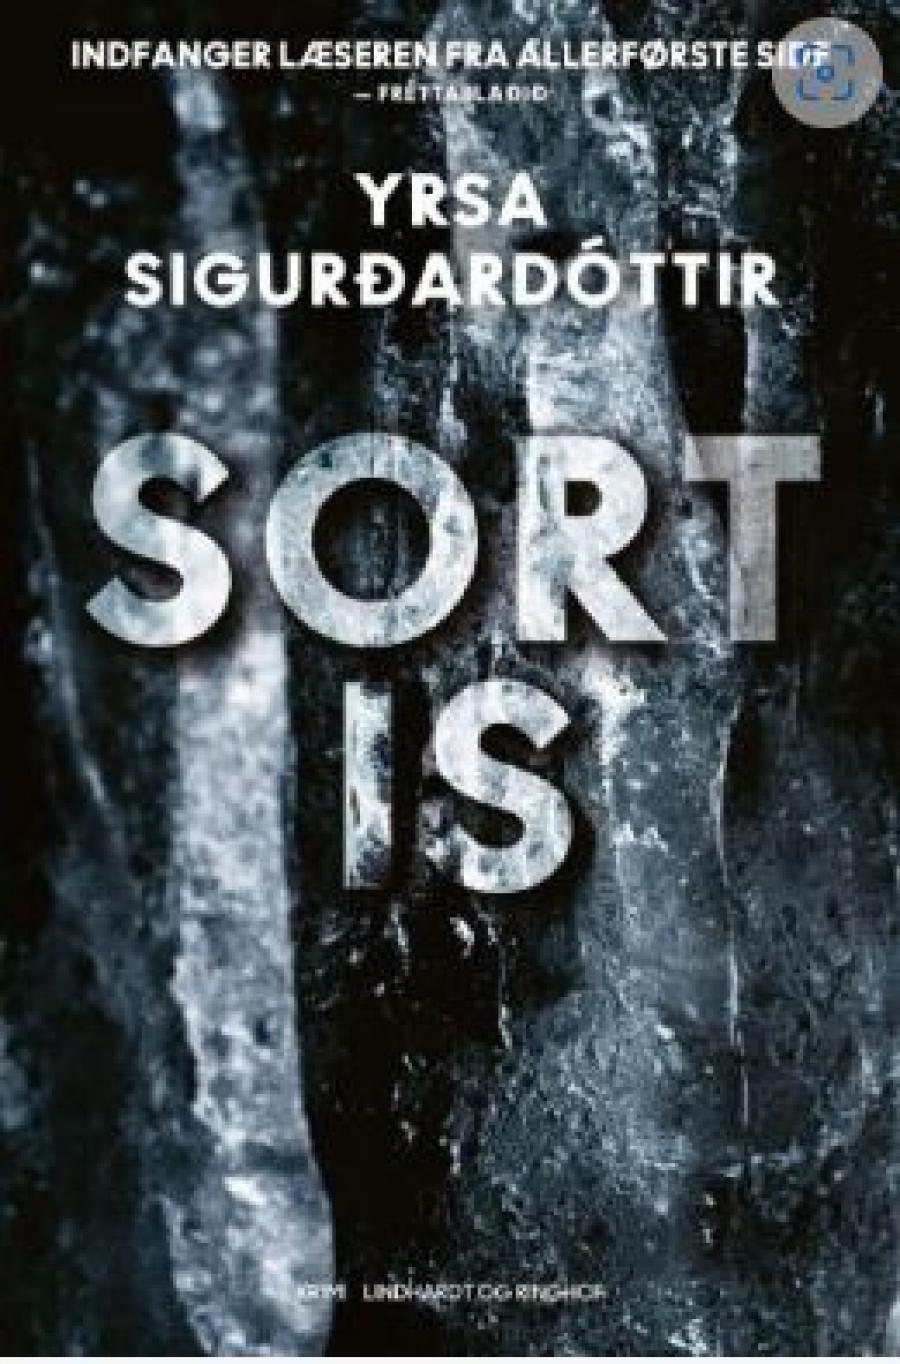 Yrsa Sigurdardottir, "Sort is"